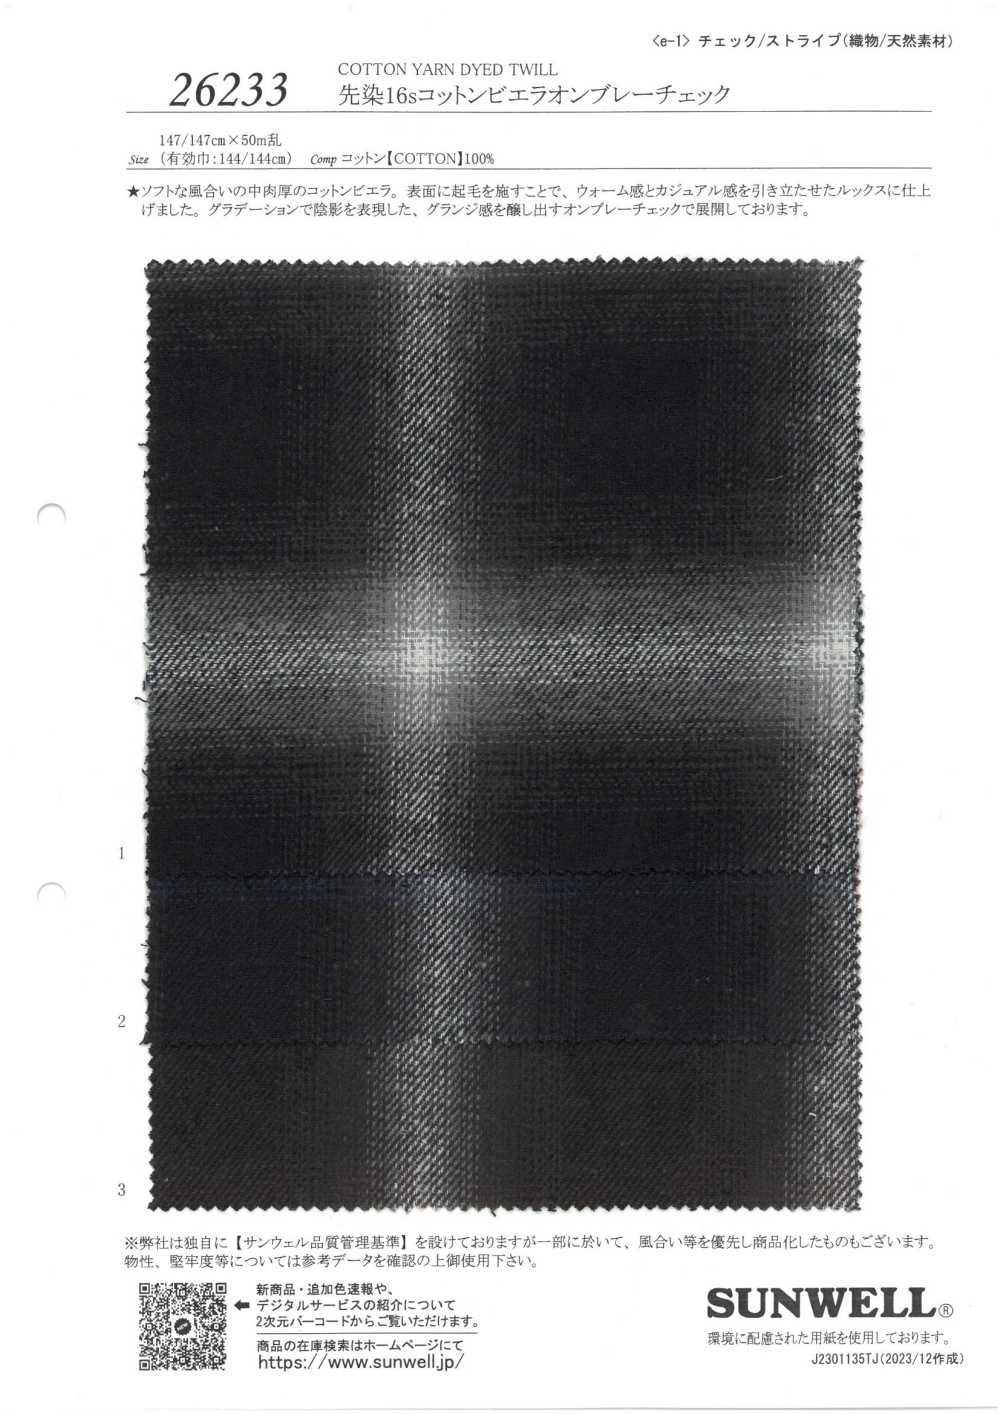 26233 Garngefärbte 16-fädige Baumwolle Mit Viyella-Ombre-Karomuster[Textilgewebe] SUNWELL